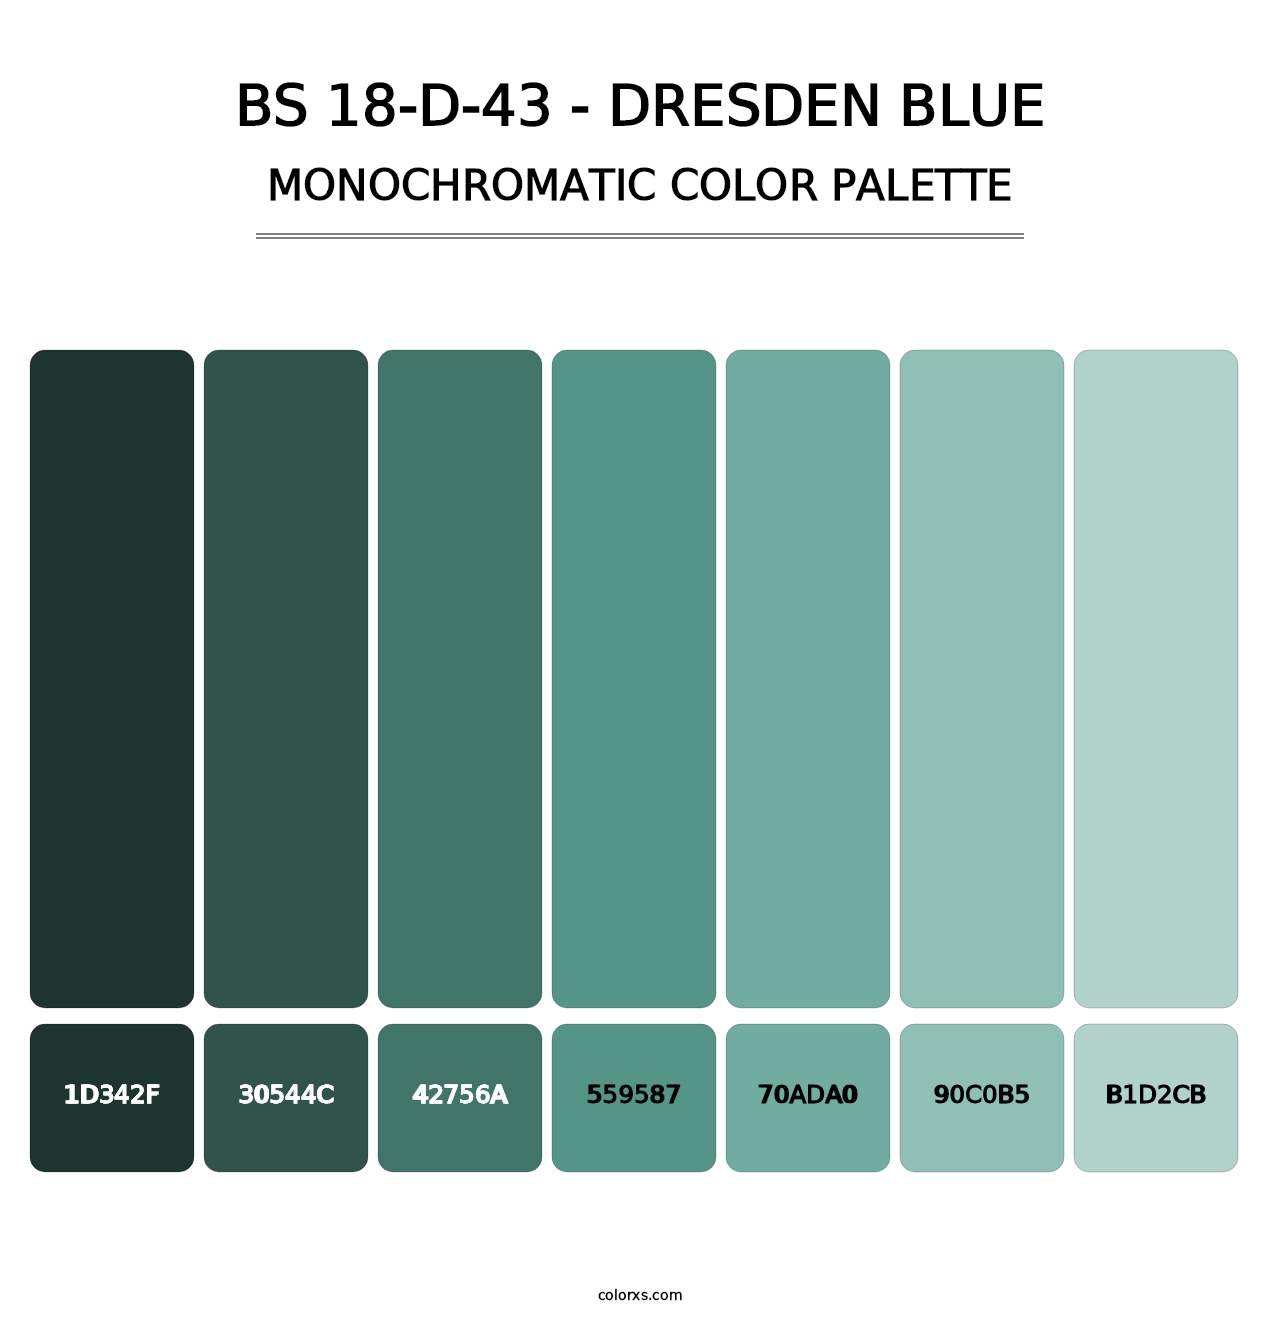 BS 18-D-43 - Dresden Blue - Monochromatic Color Palette